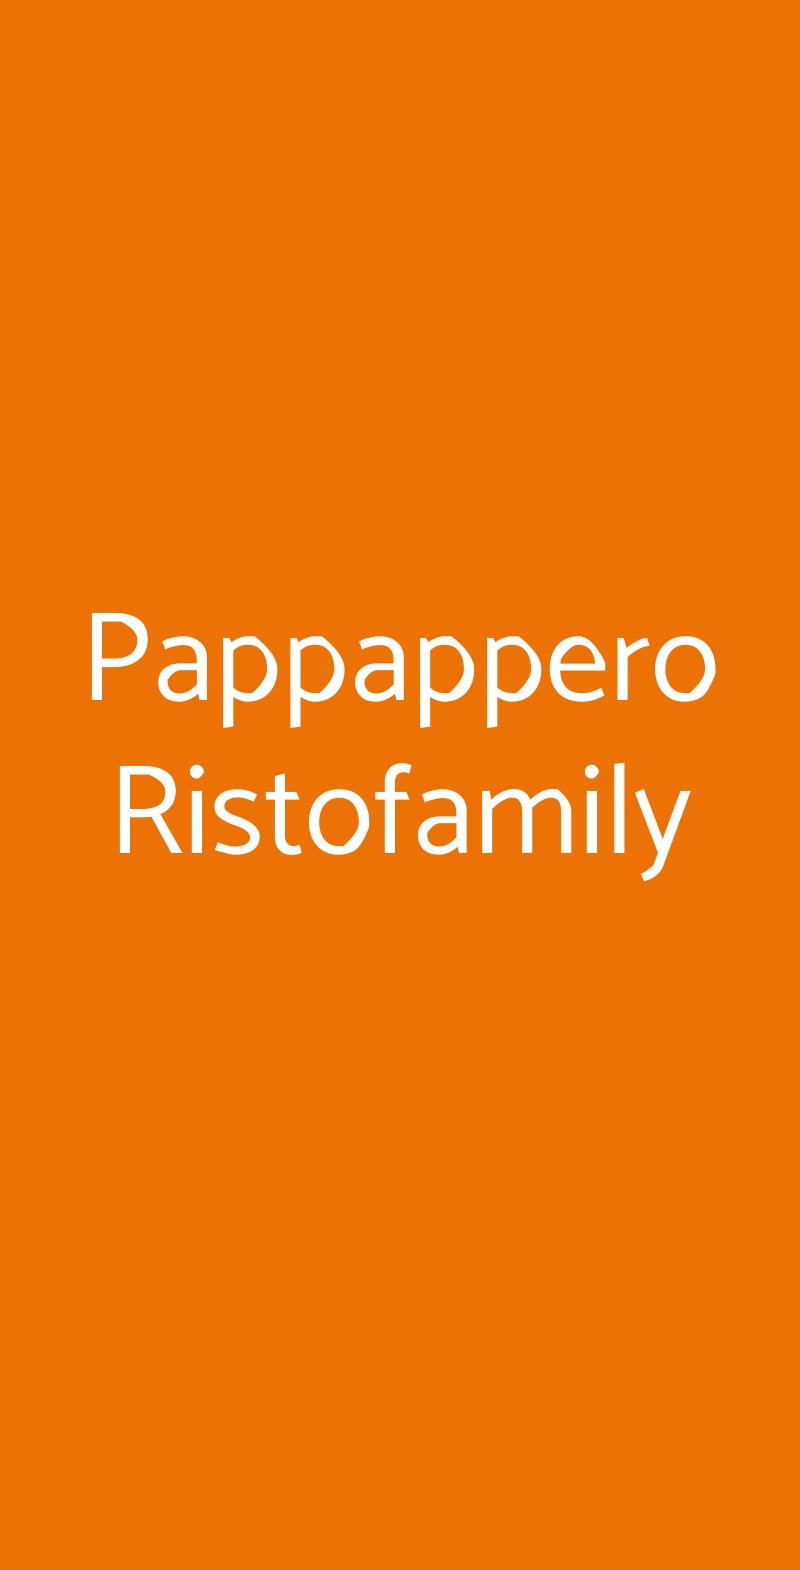 Pappappero Ristofamily Fiumicino menù 1 pagina